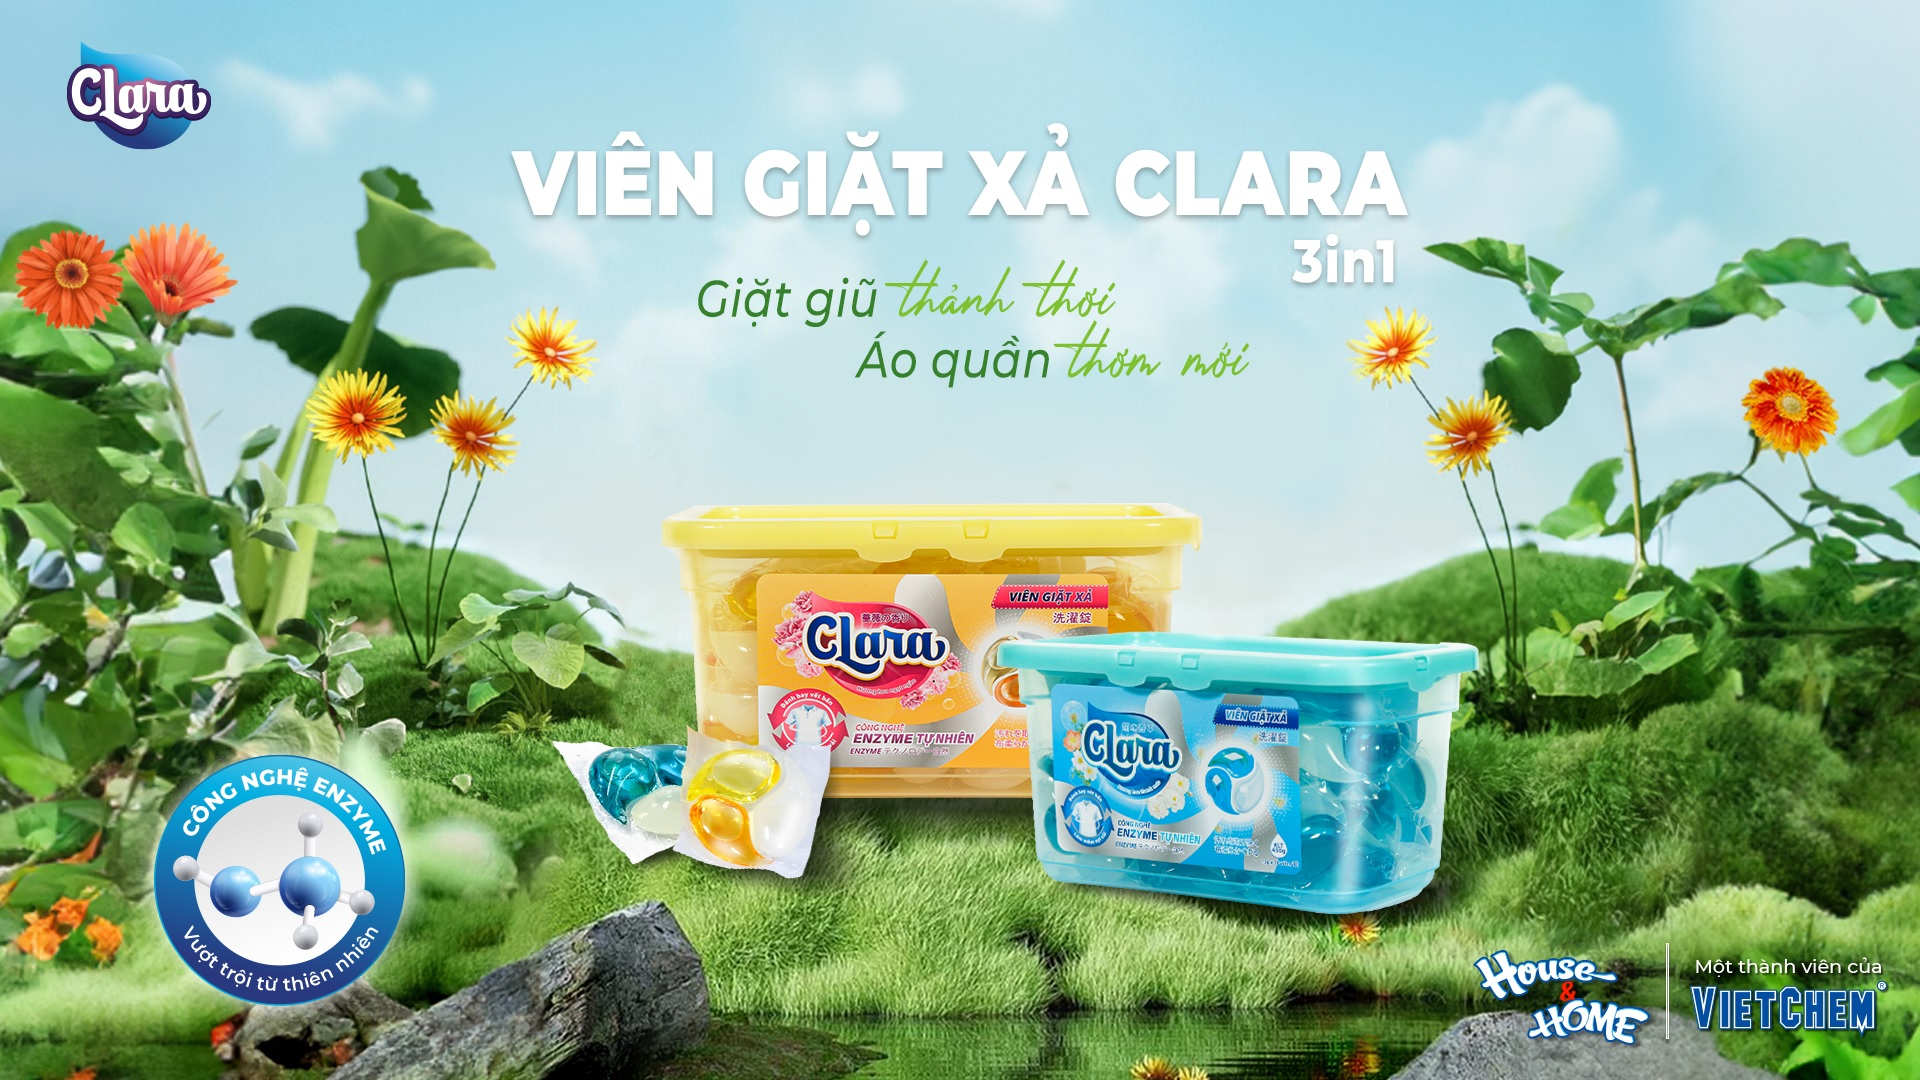 Viên giặt xả Clara 3in1 lưu hương bền lâu với 2 mùi hương dễ chịu: Hương hoa ngọt ngào và Hương hoa thanh mát.